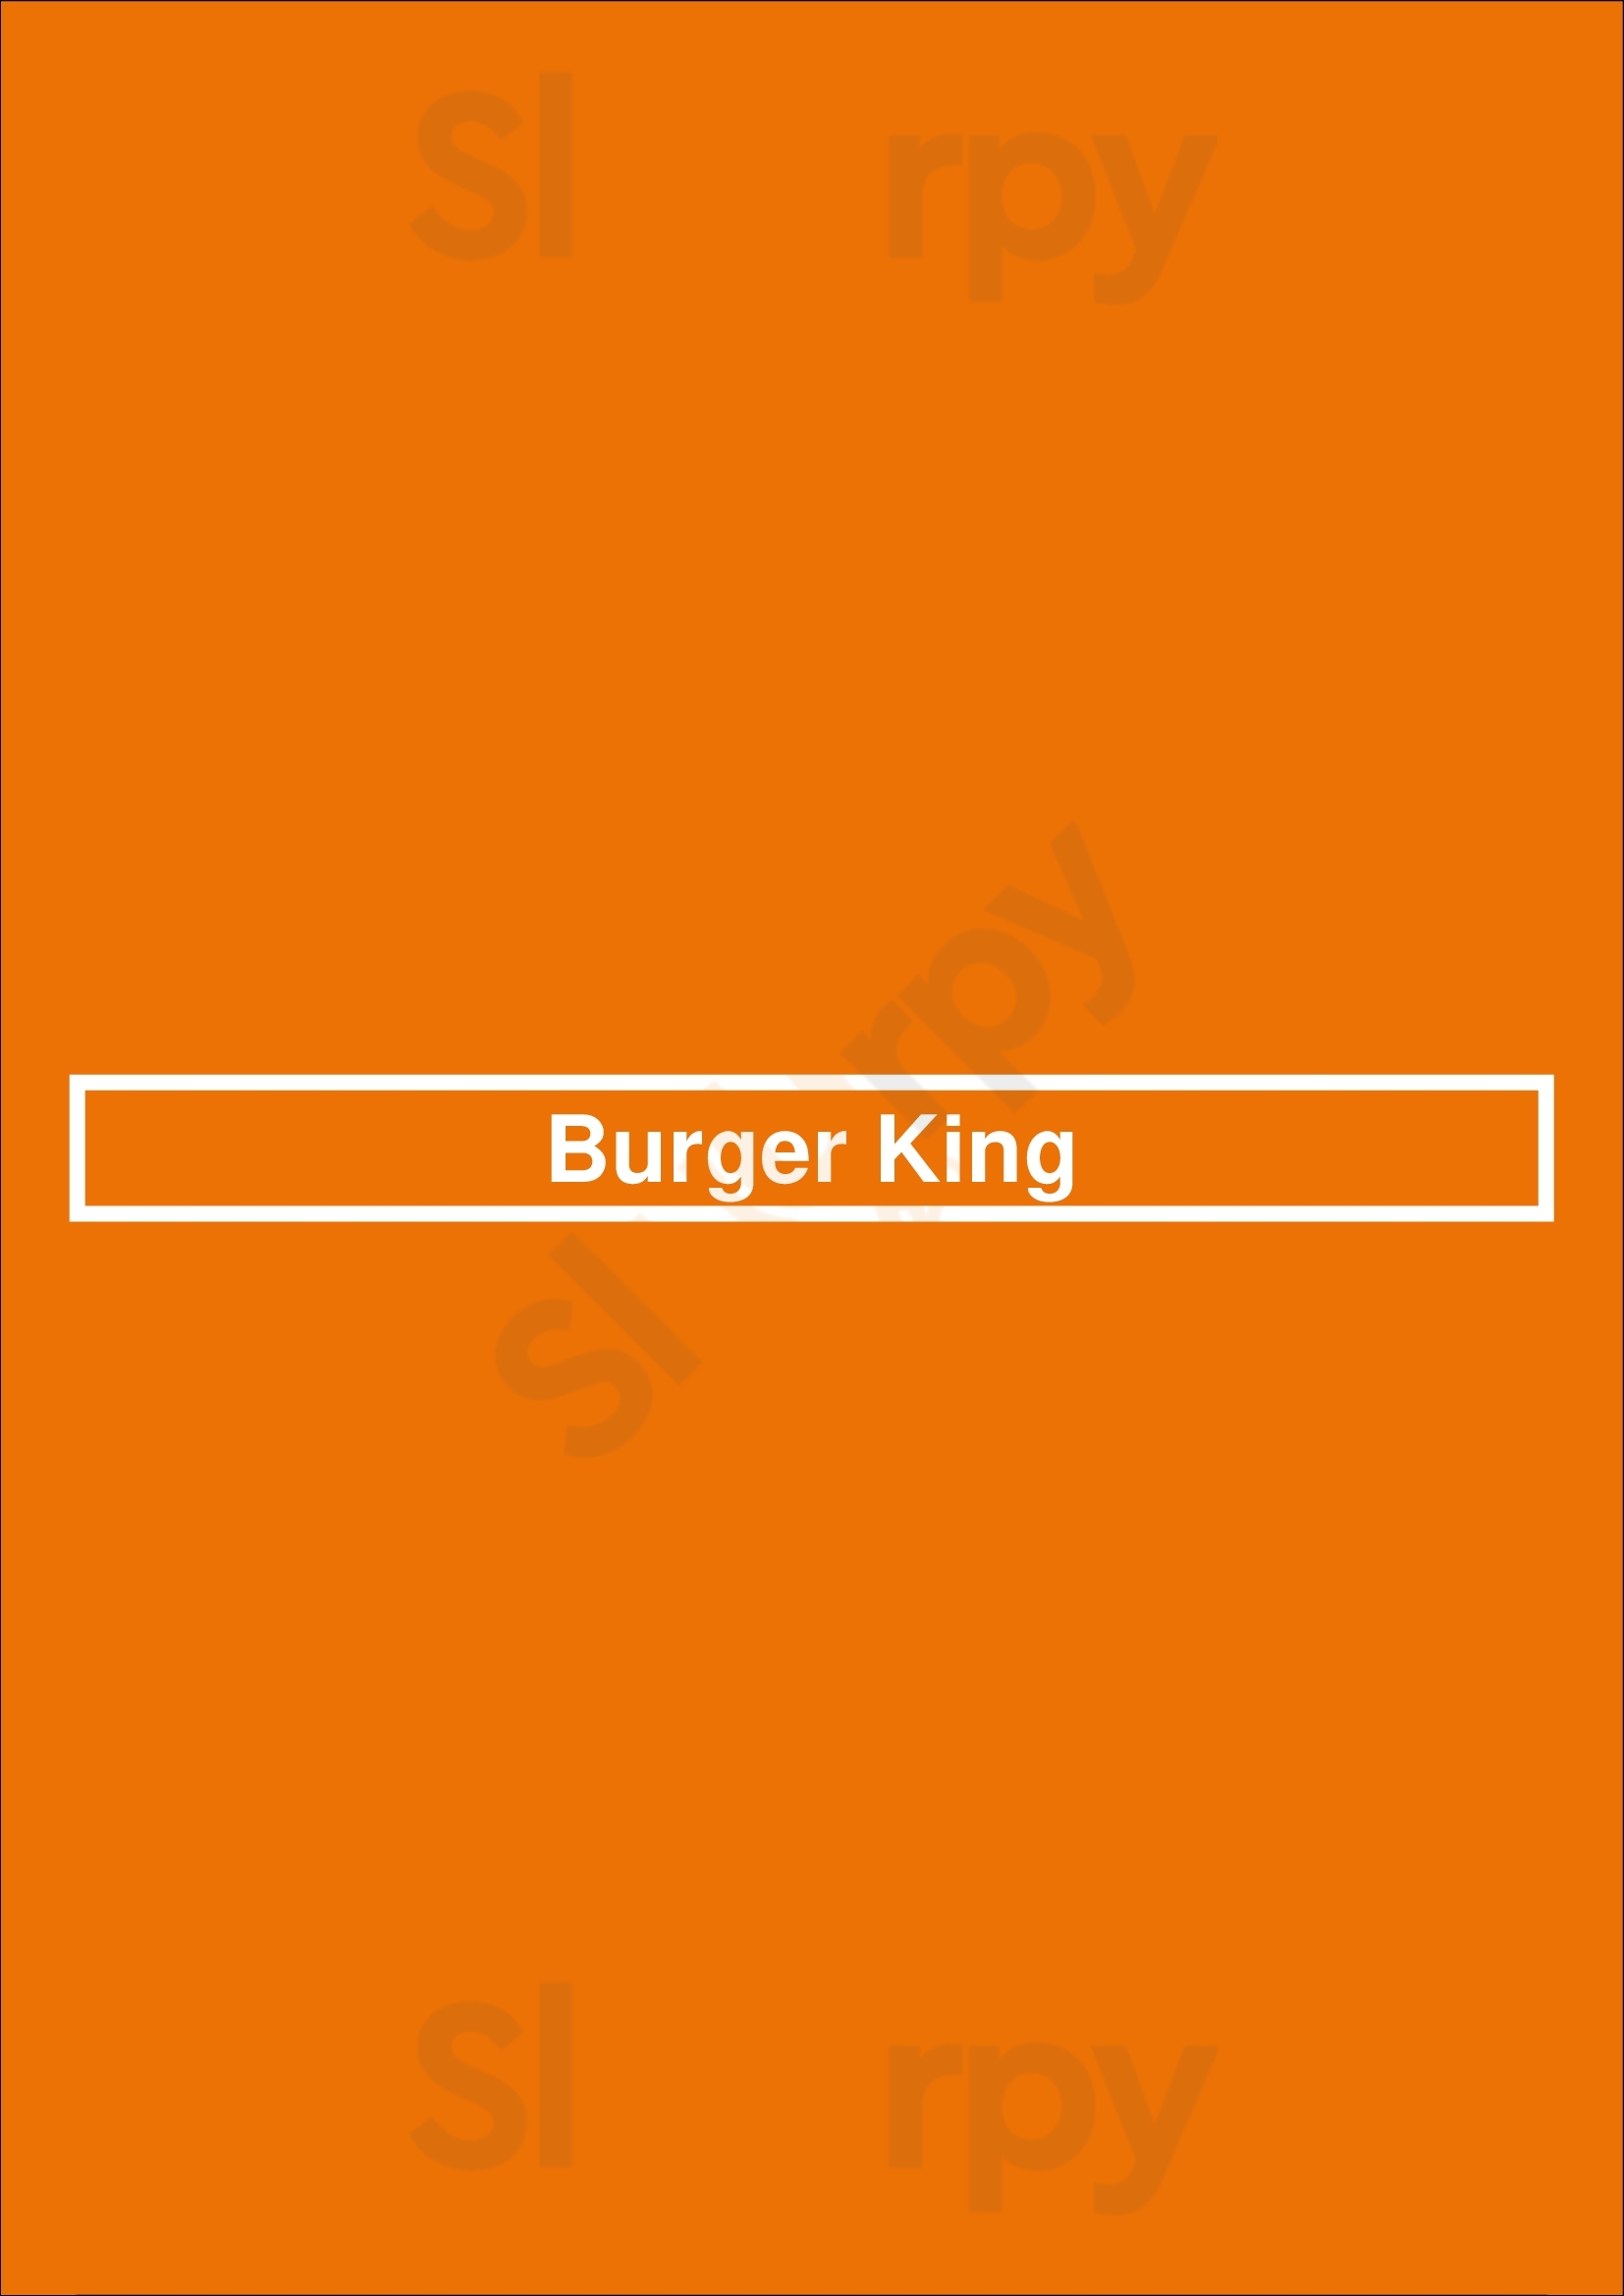 Burger King Brooklyn Menu - 1